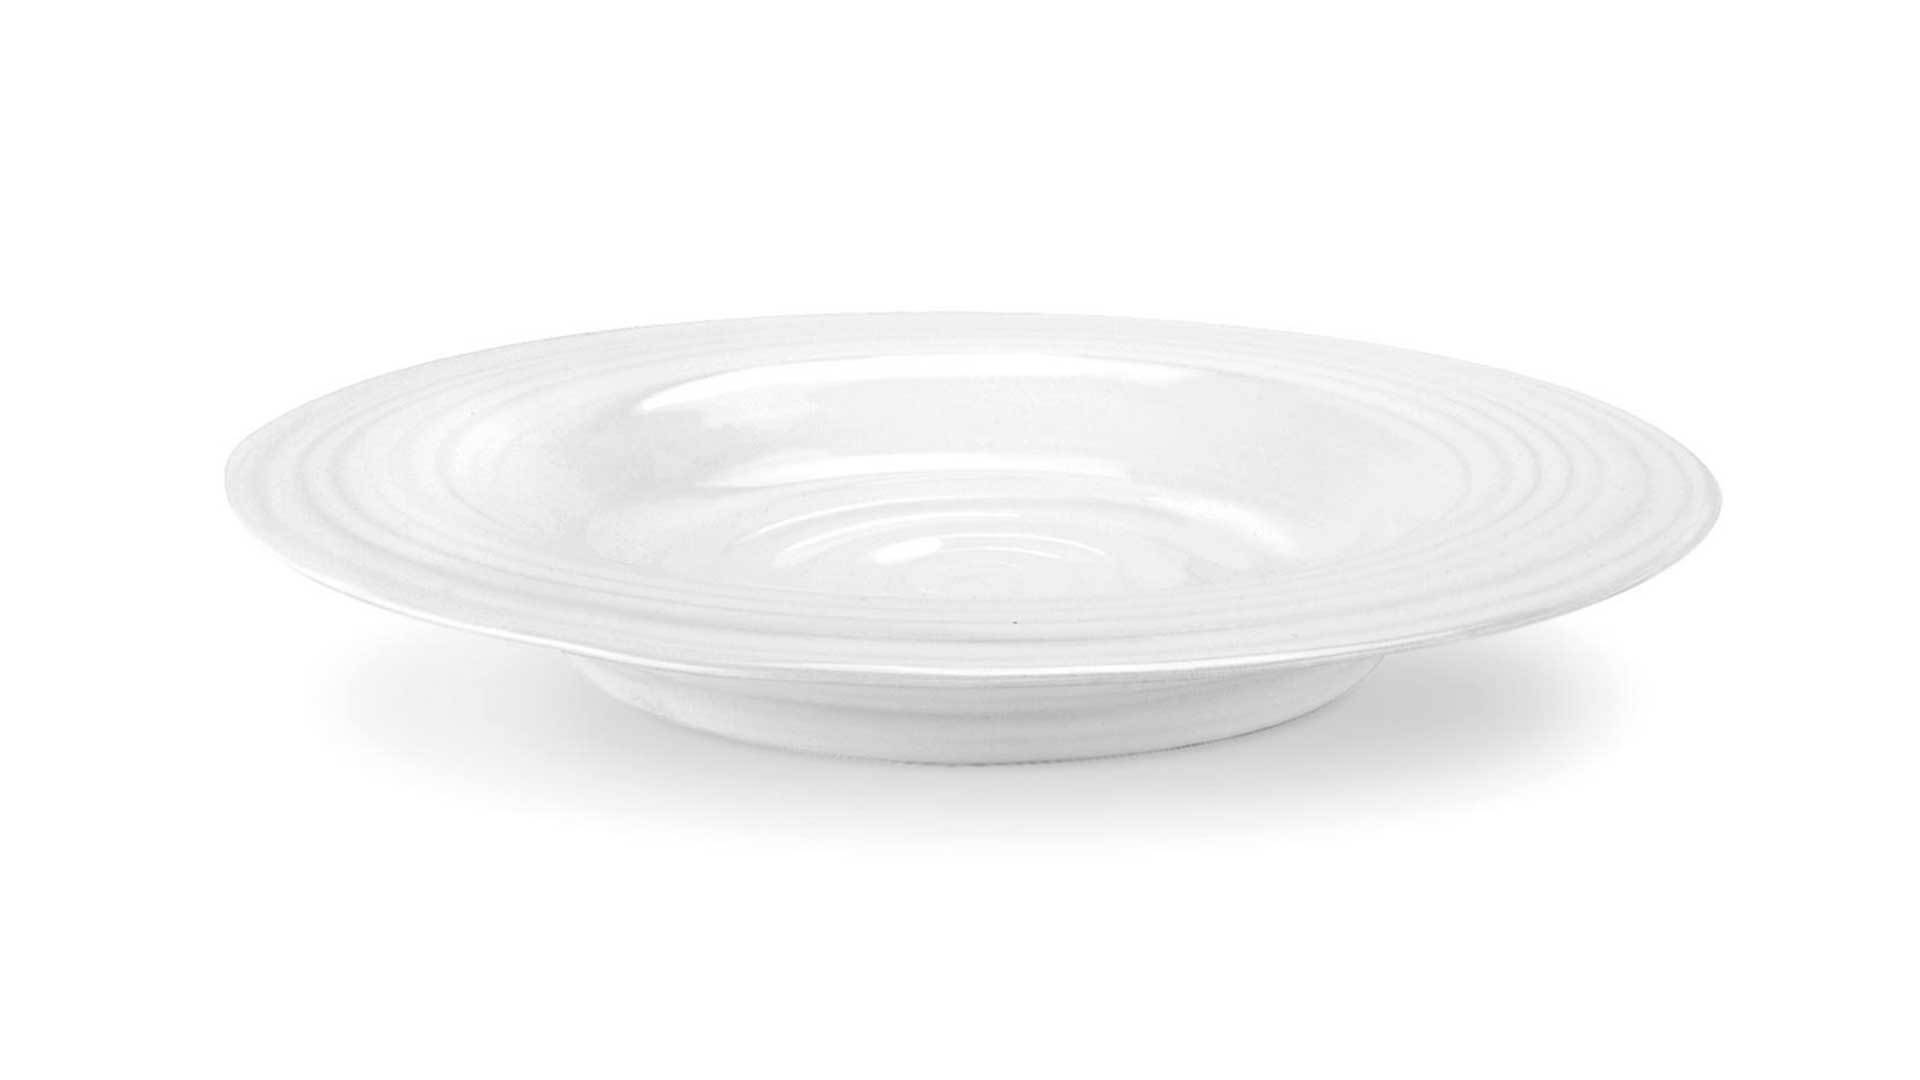 Тарелка суповая Portmeirion Софи Конран для Портмейрион 25 см, белая